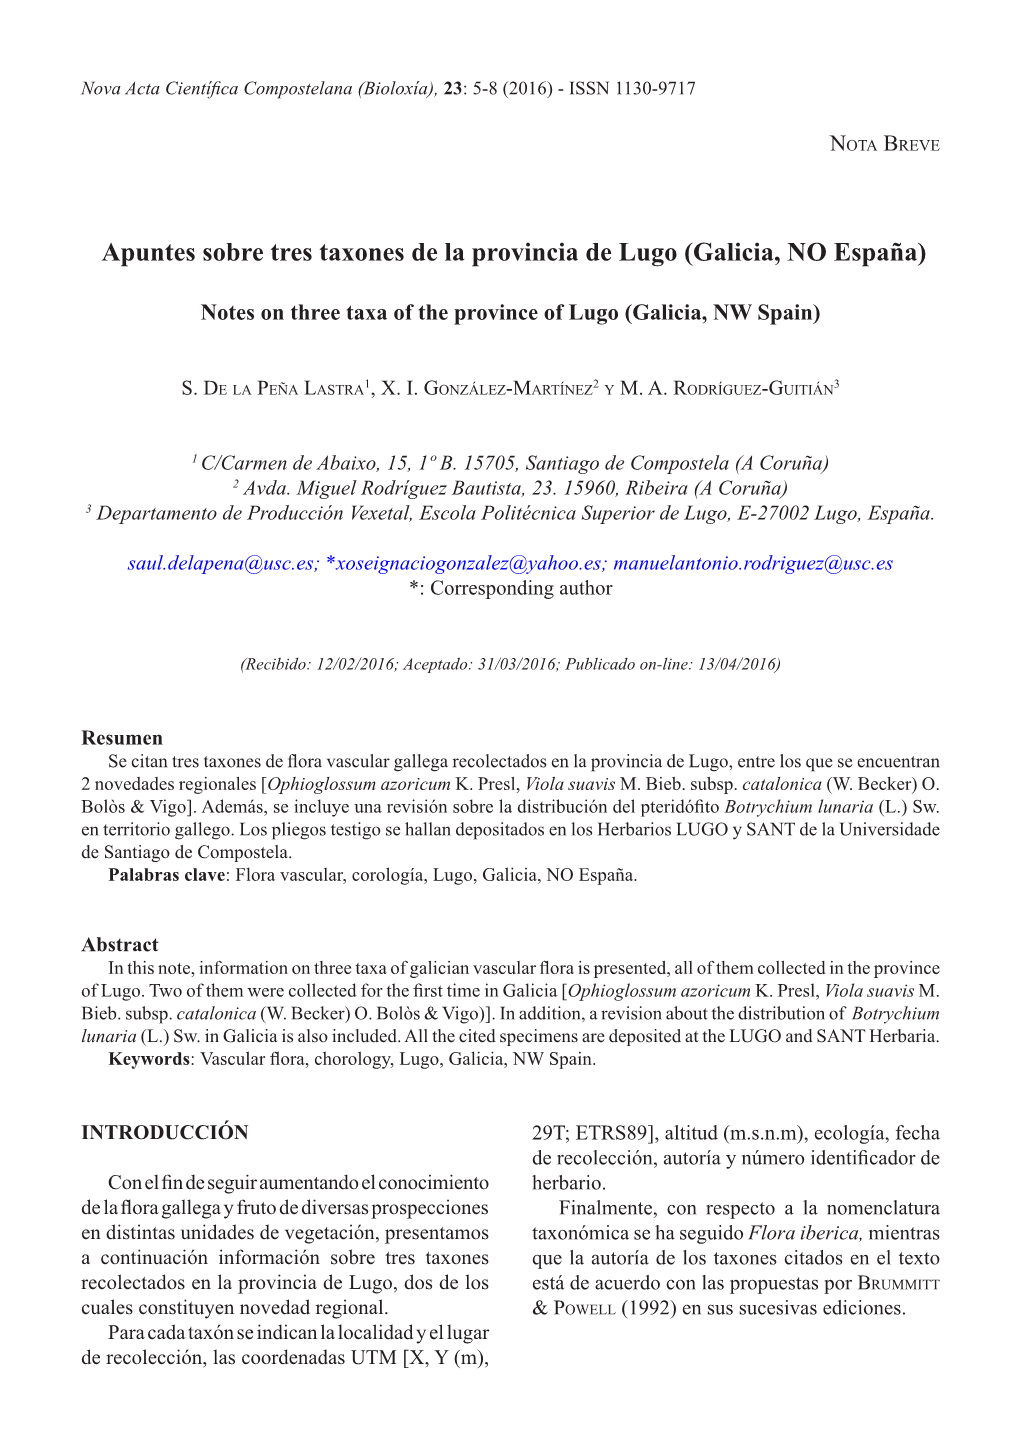 Apuntes Sobre Tres Taxones De La Provincia De Lugo (Galicia, NO España)